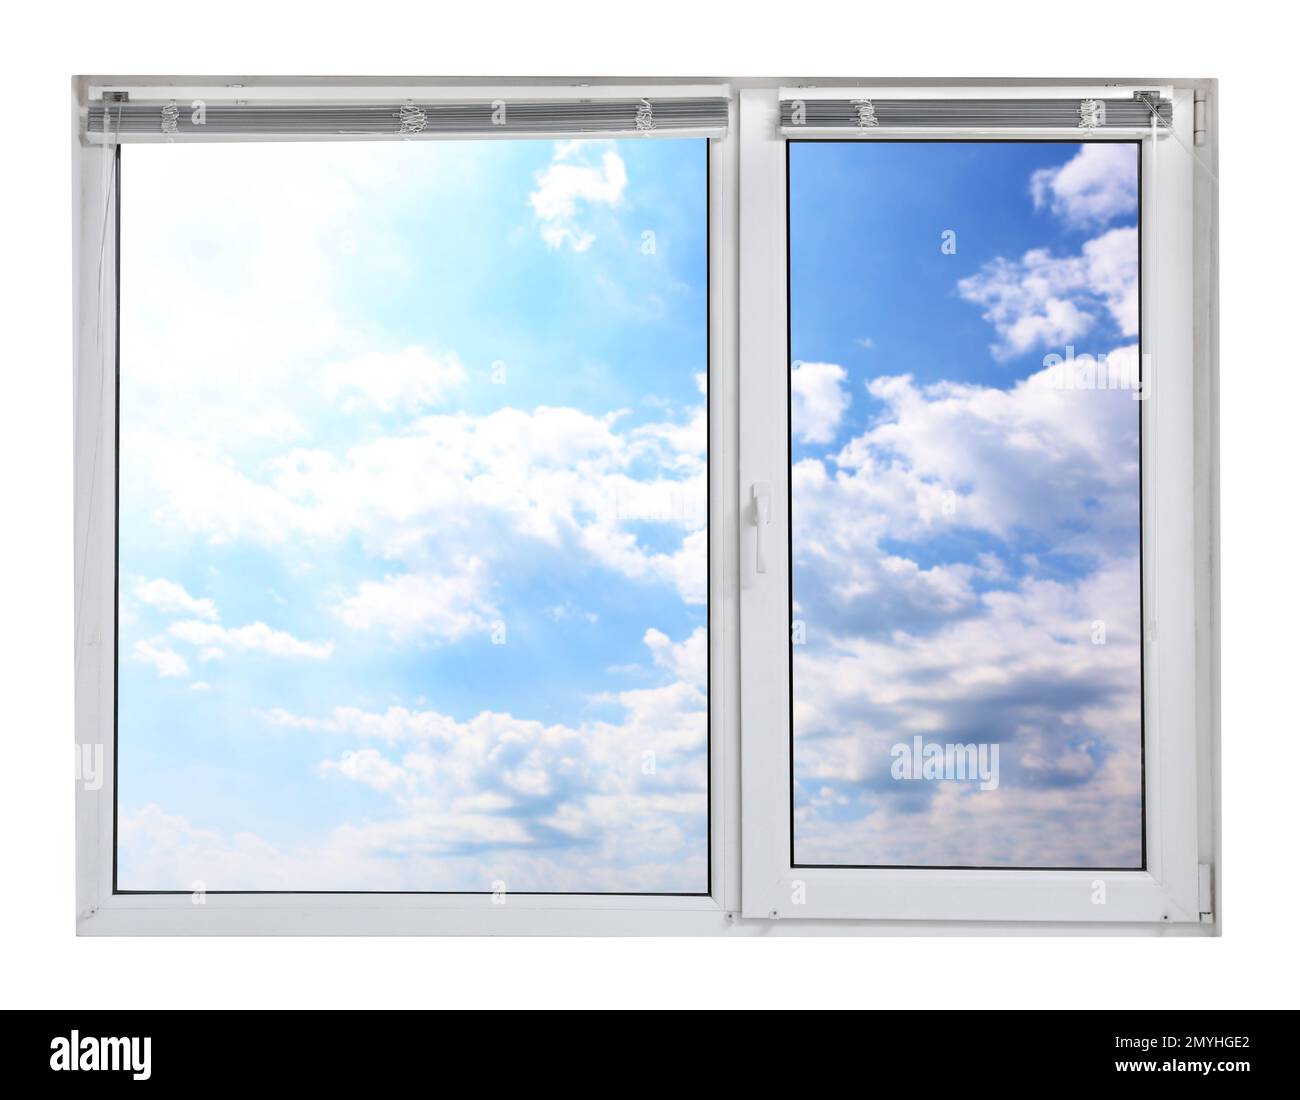 Ciel bleu avec nuages, vue par fenêtre en plastique Banque D'Images